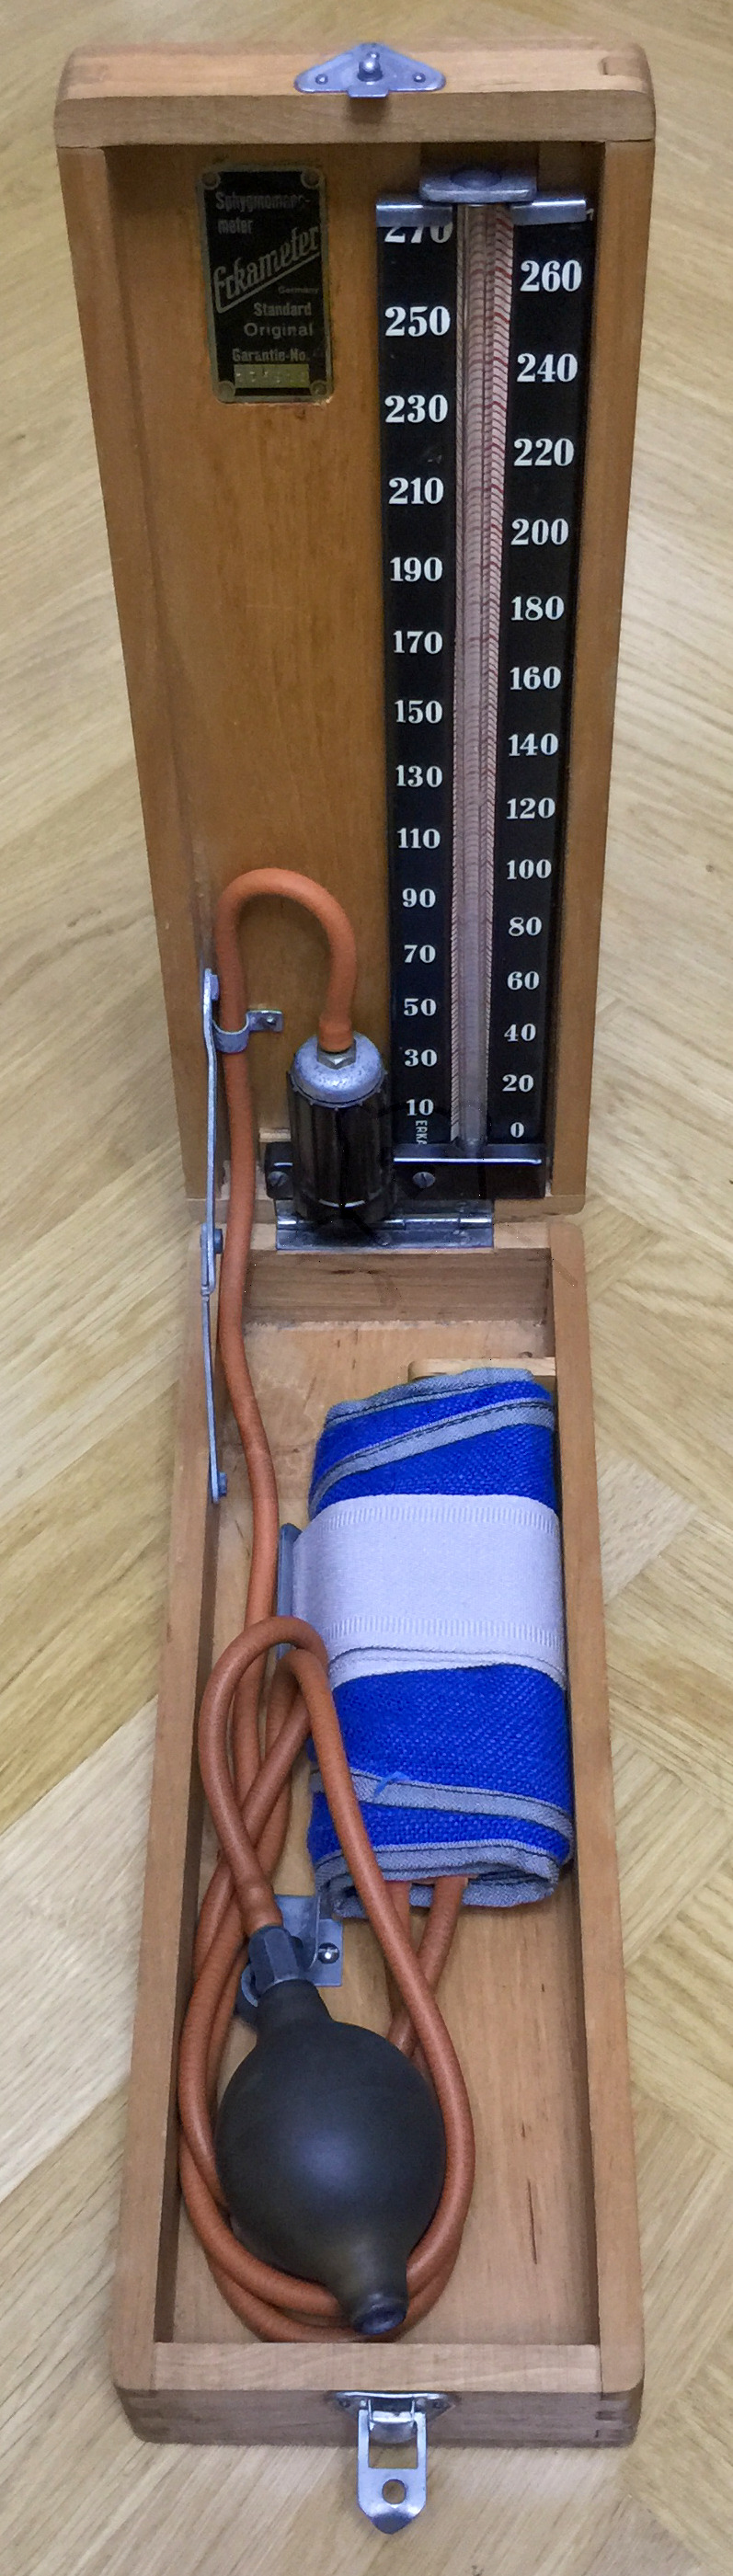 Erka Standard Blutdruckmesser (Sphygmomanometer), Originalzustand, 1940'er Jahre, Ansicht schräg oben